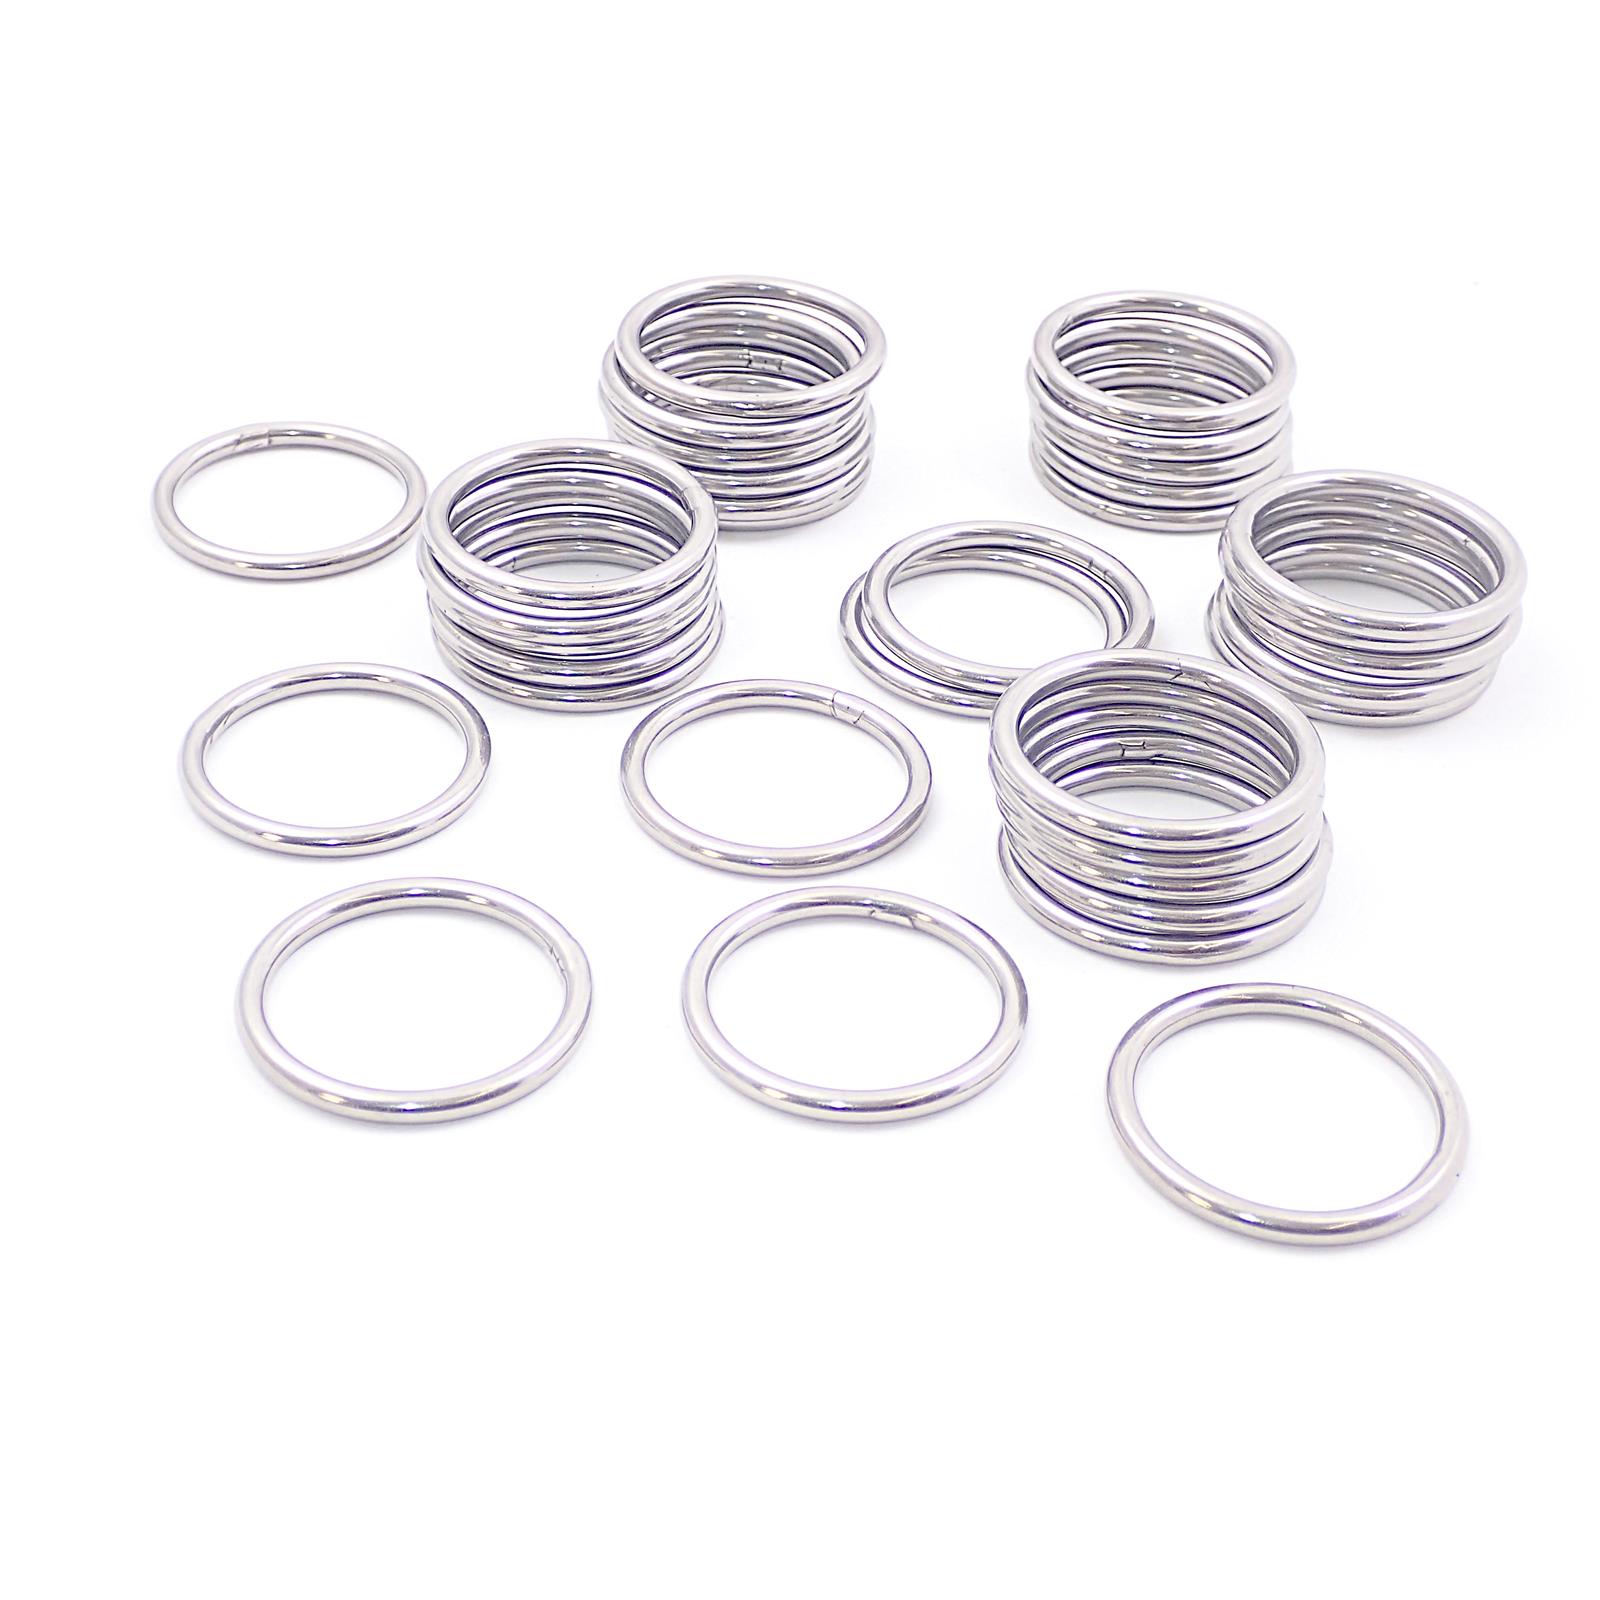 Welded metal O Rings 316 (A4 Marine) Stainless Steel Rings, Buckles ...